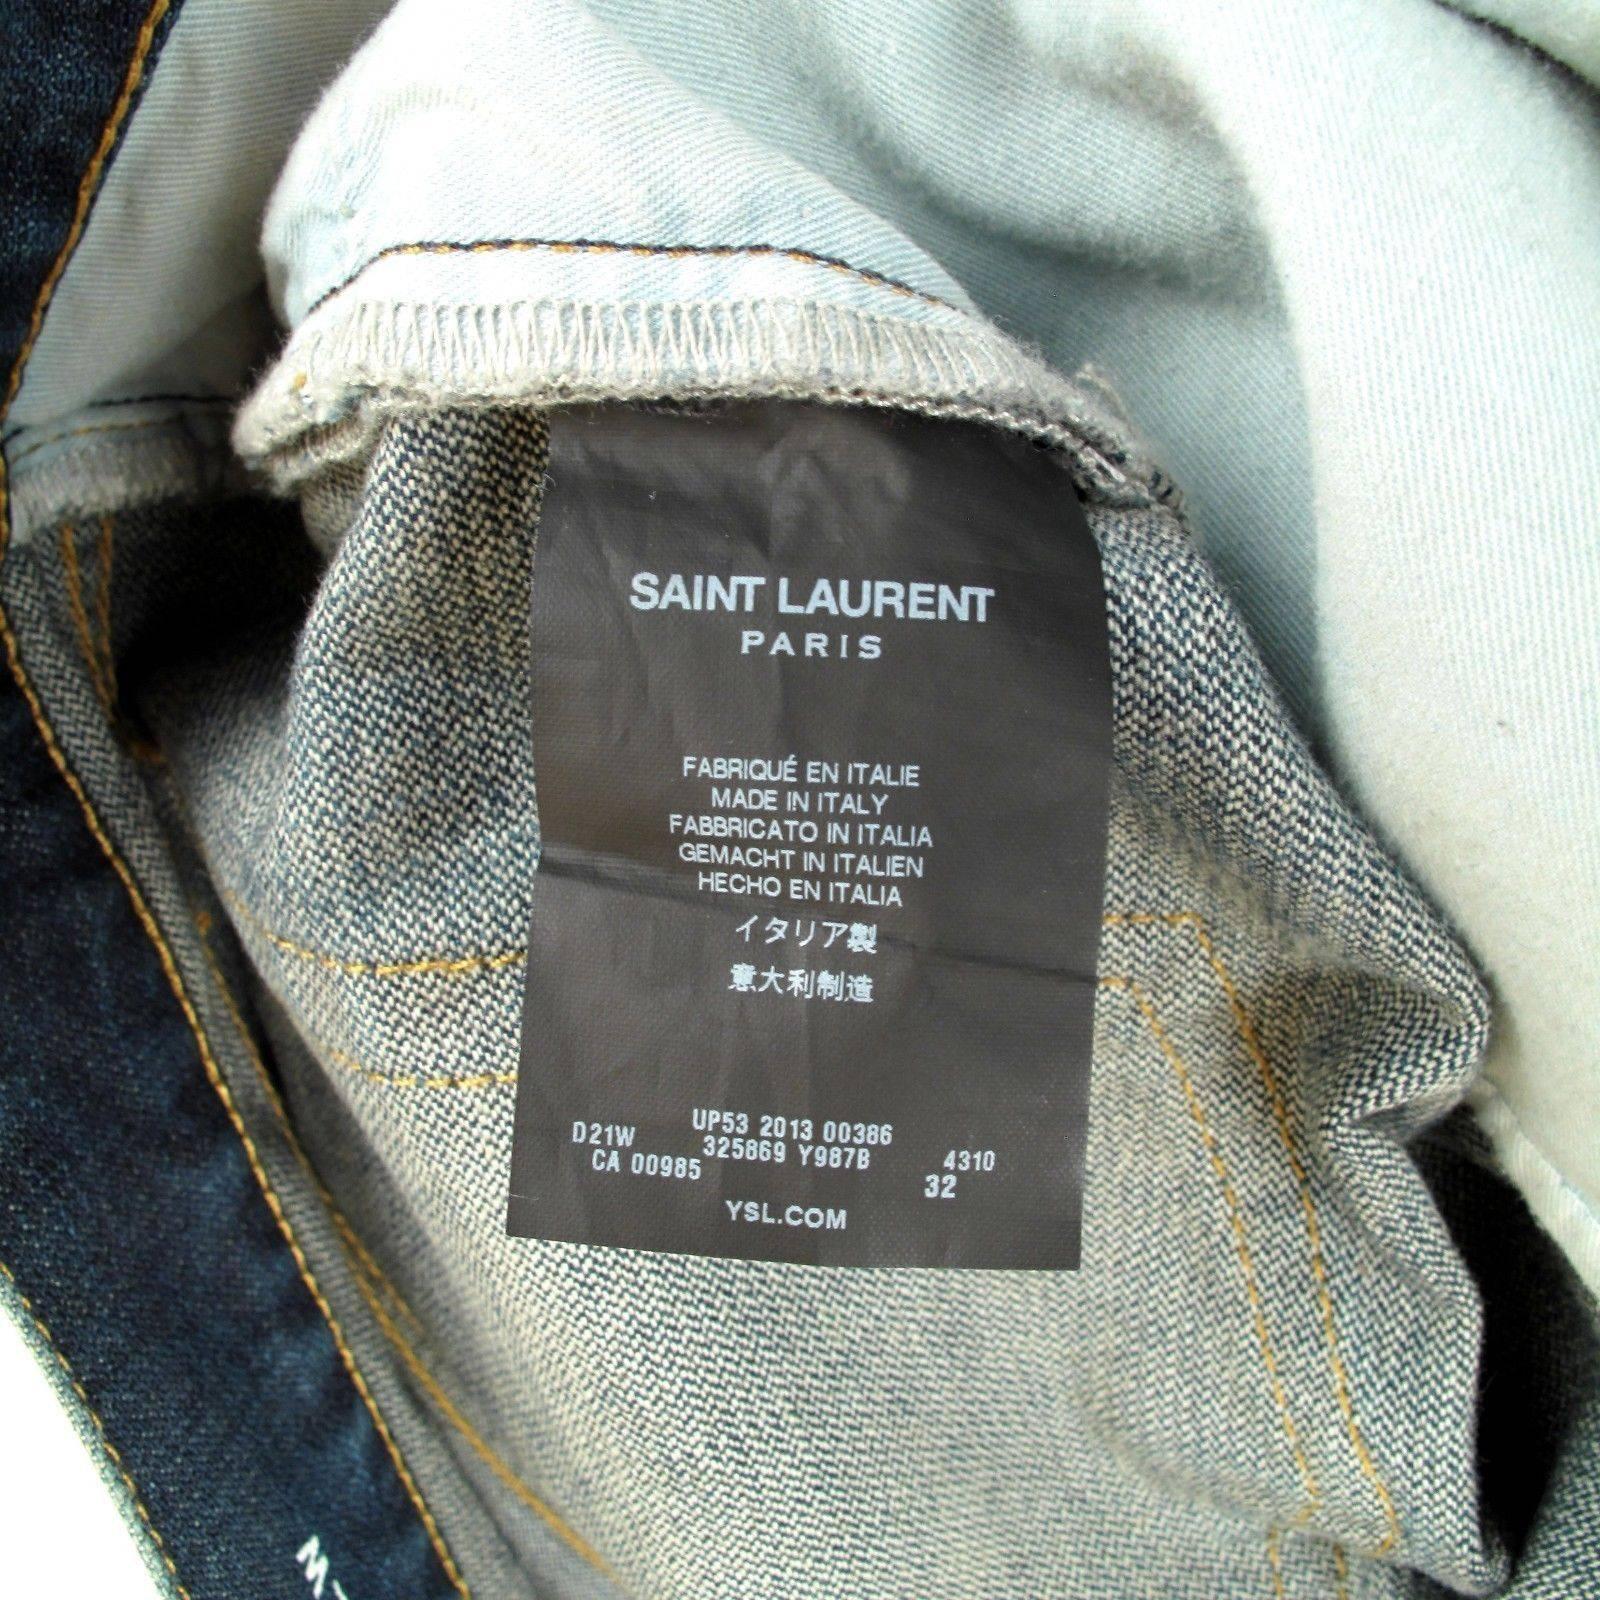 Saint Laurent Jeans - 32 - Ripped Paint Blue Denim Blowout Destroyed Crash 1